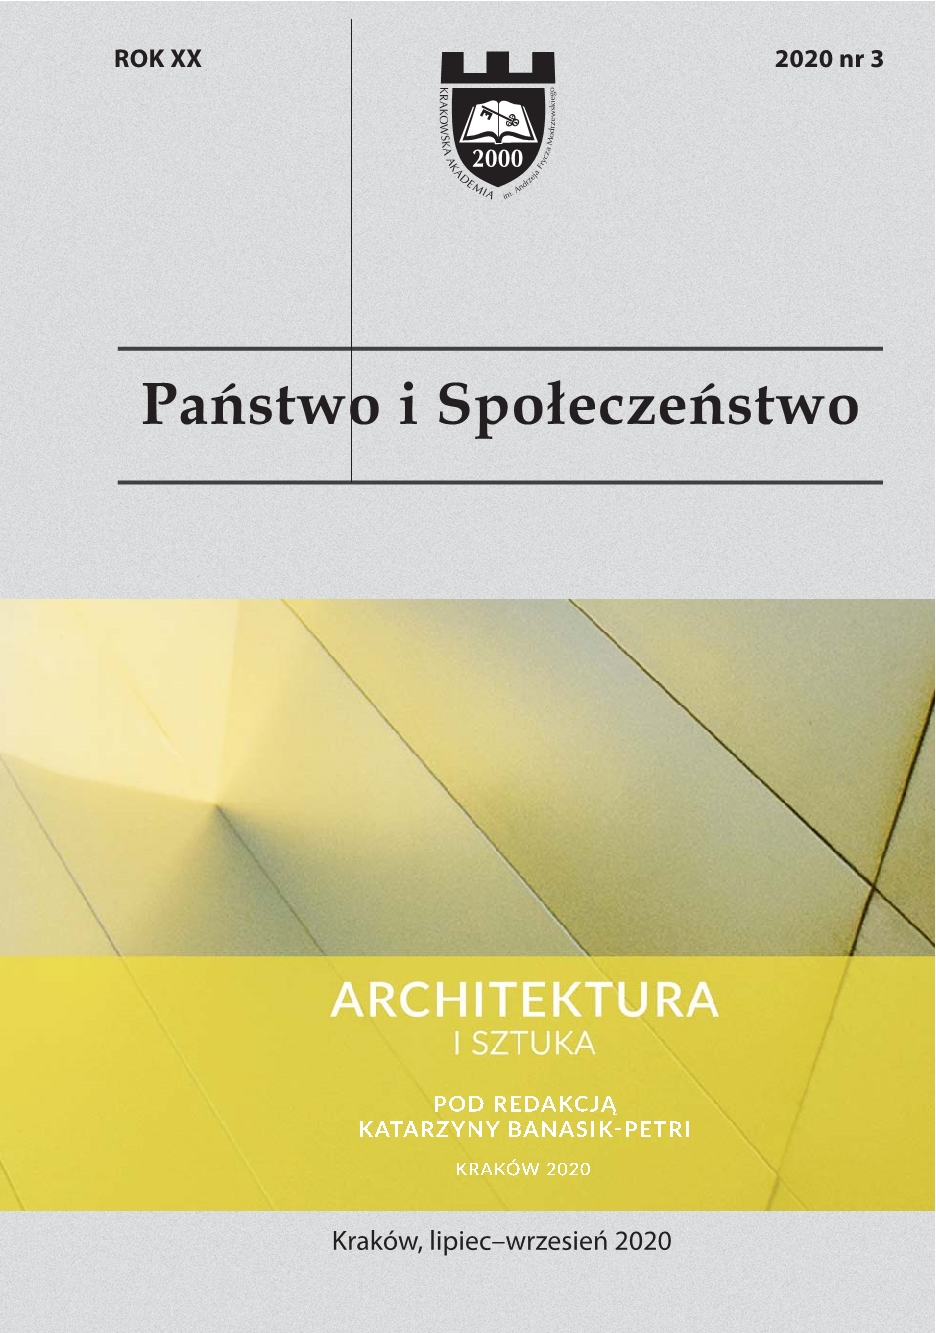 Architektura - sztuka przestrzeni publicznych w Polsce wczoraj i dziś